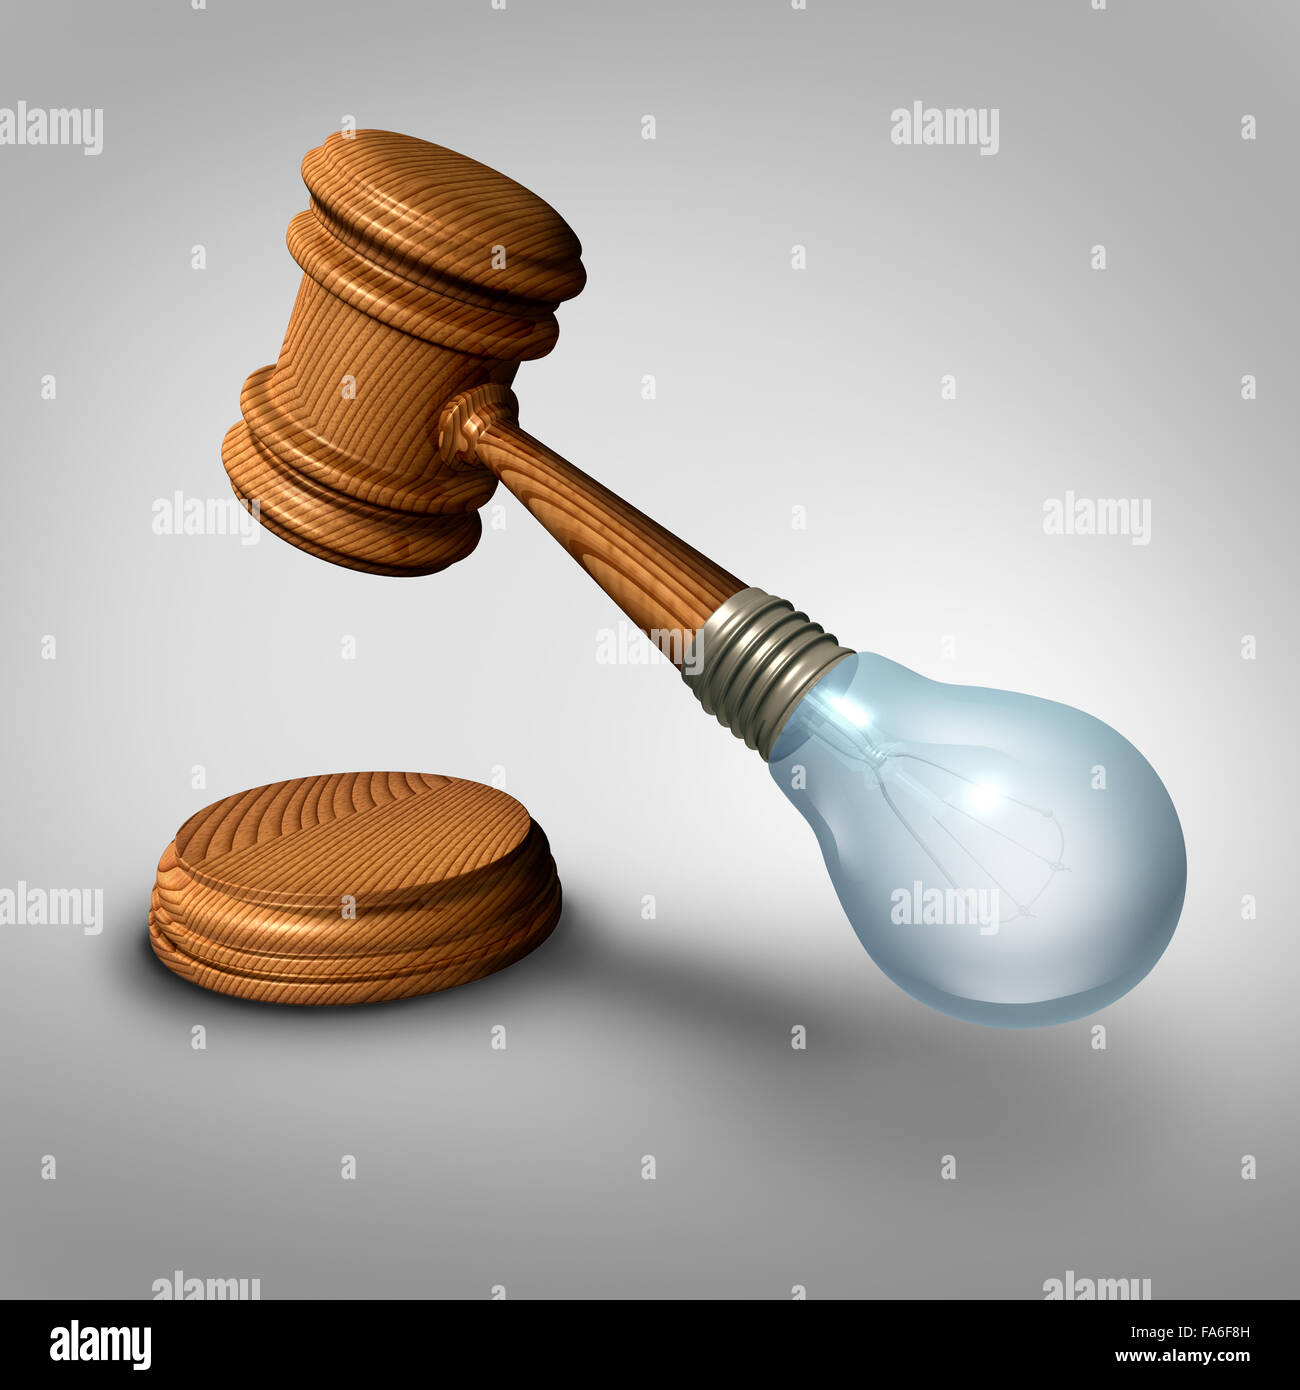 Gesetz Ideen Konzept und Urteil Symbol als Richter Hammer oder Hammer mit einer Glühbirne als Metapher für die neue Gesetzgebung oder Rechtsgutachten und Rechtsanwalt Ideen gemacht. Stockfoto